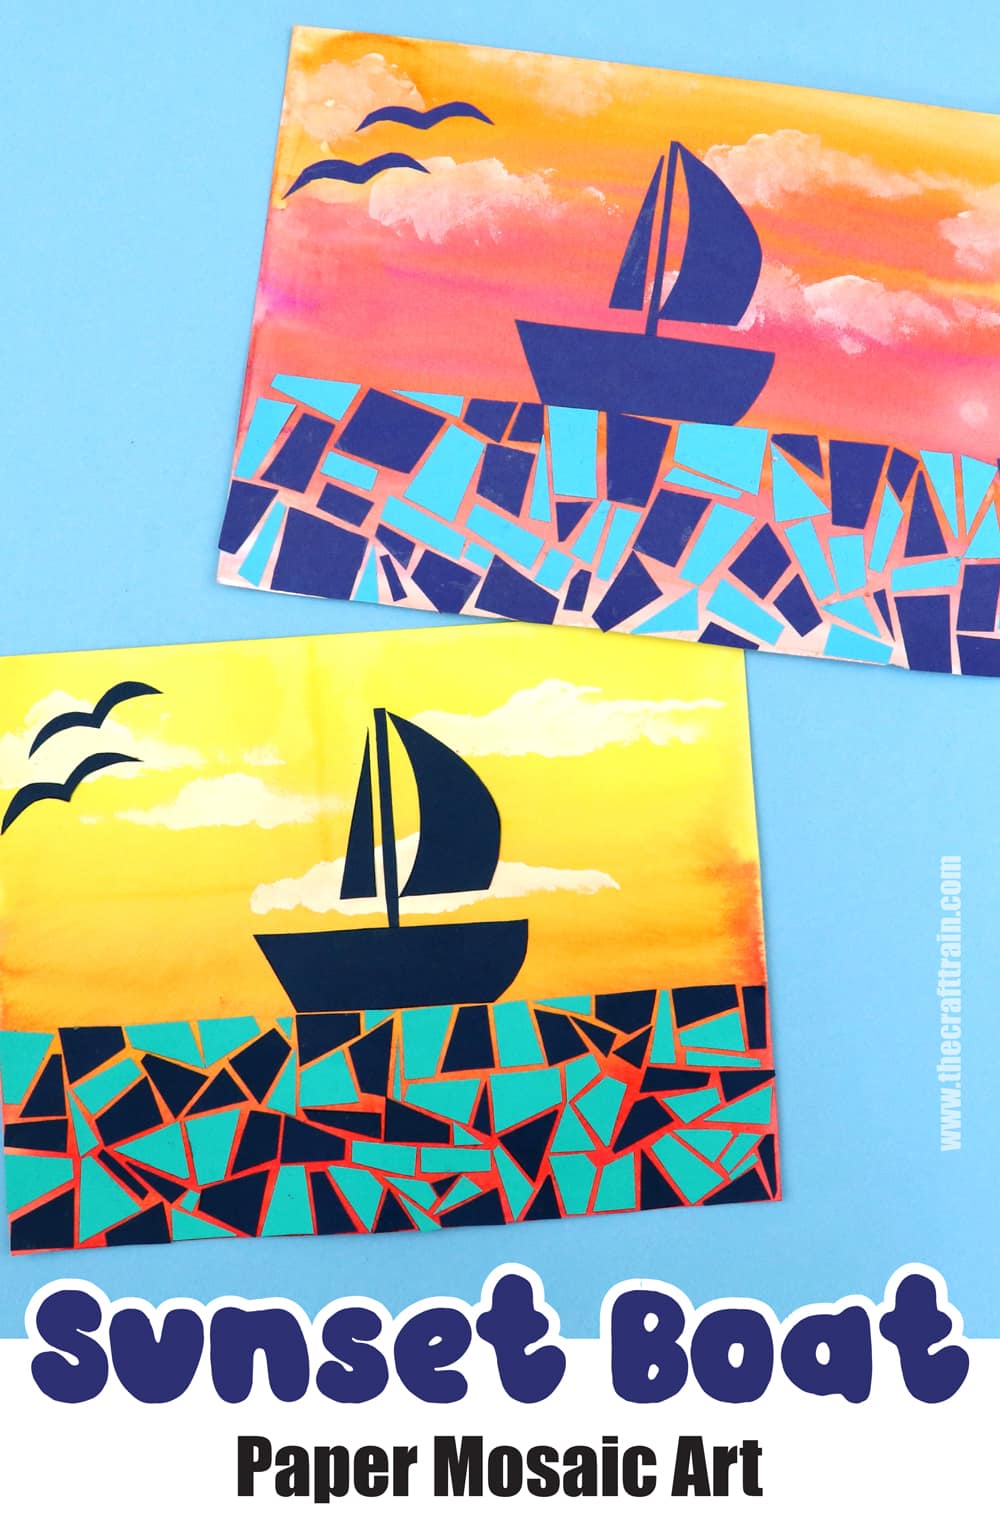 paper mosaic art sunset boat scene for summer